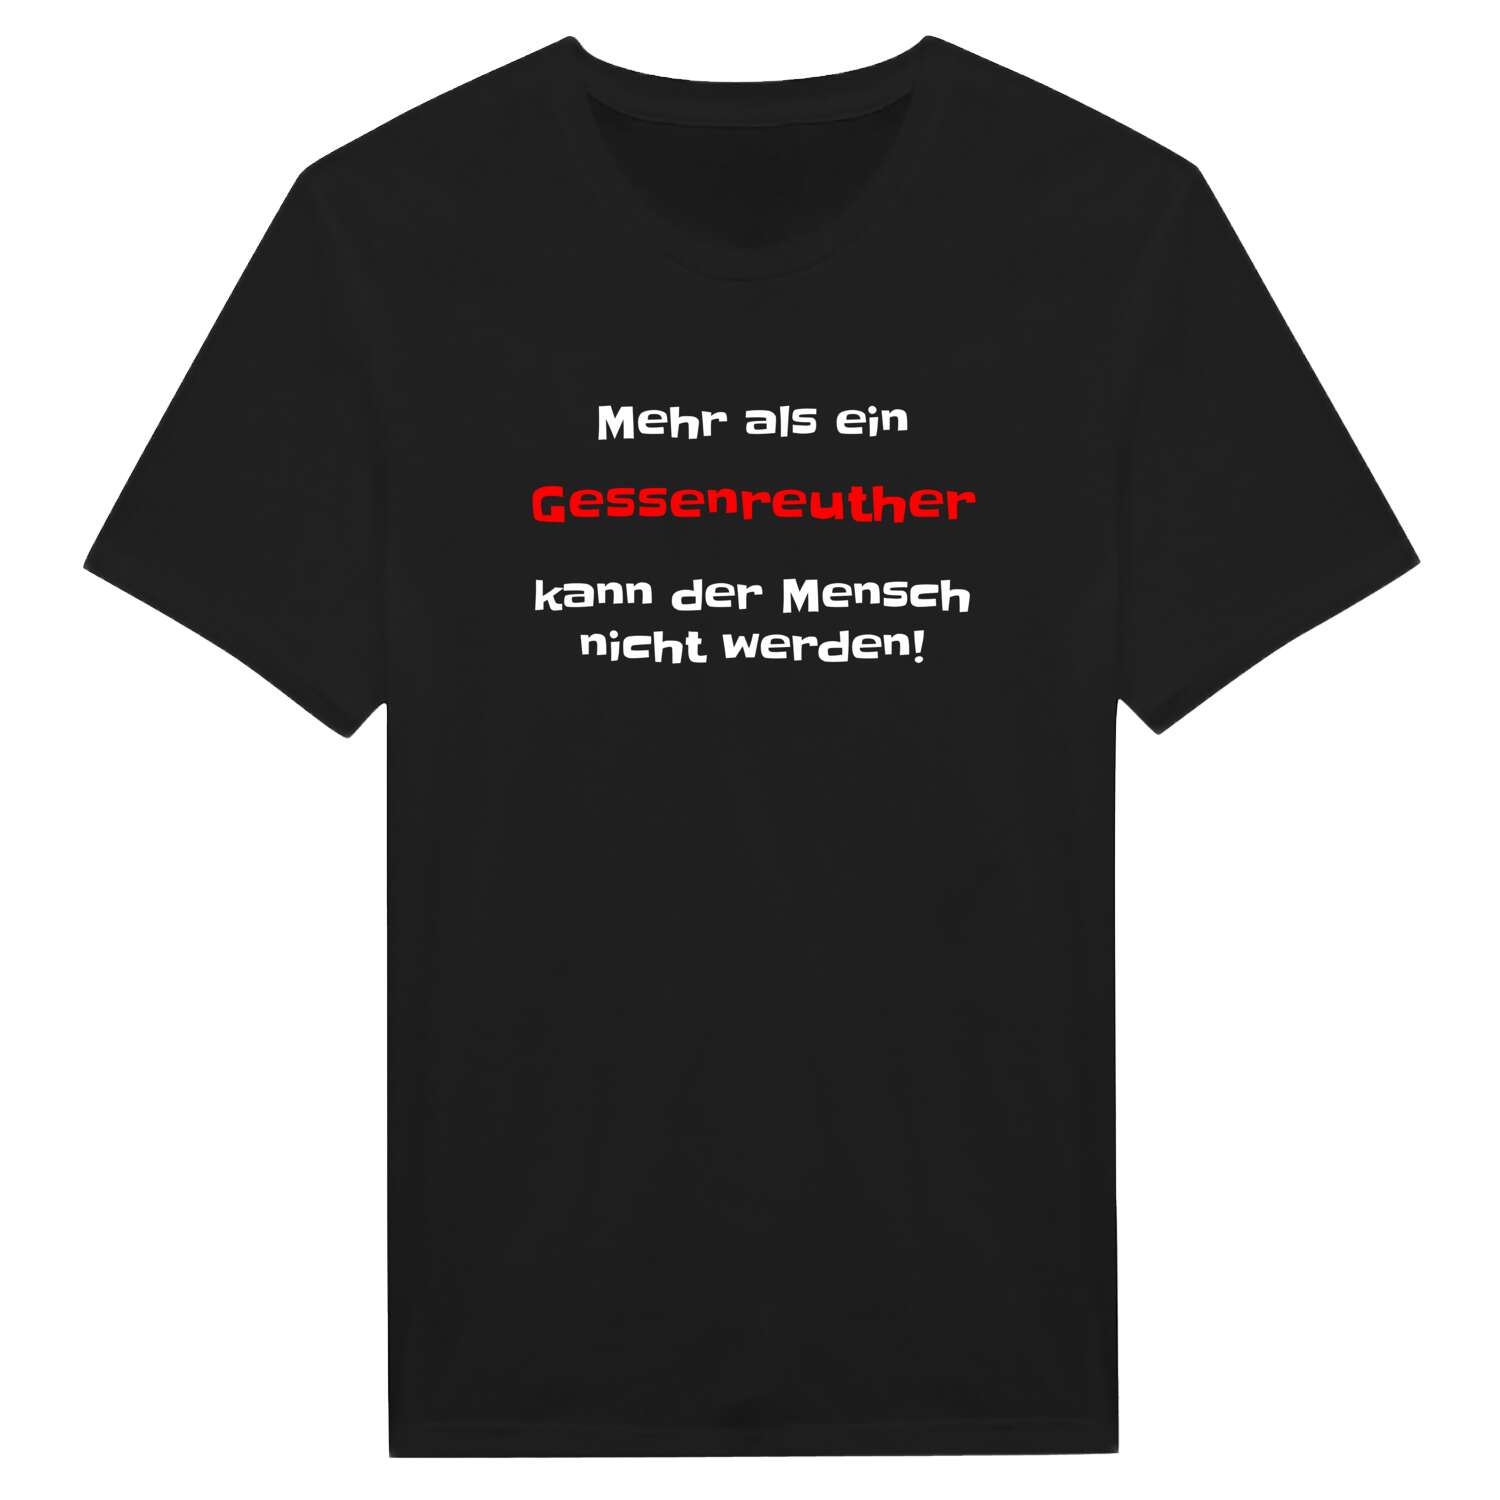 Gessenreuth T-Shirt »Mehr als ein«